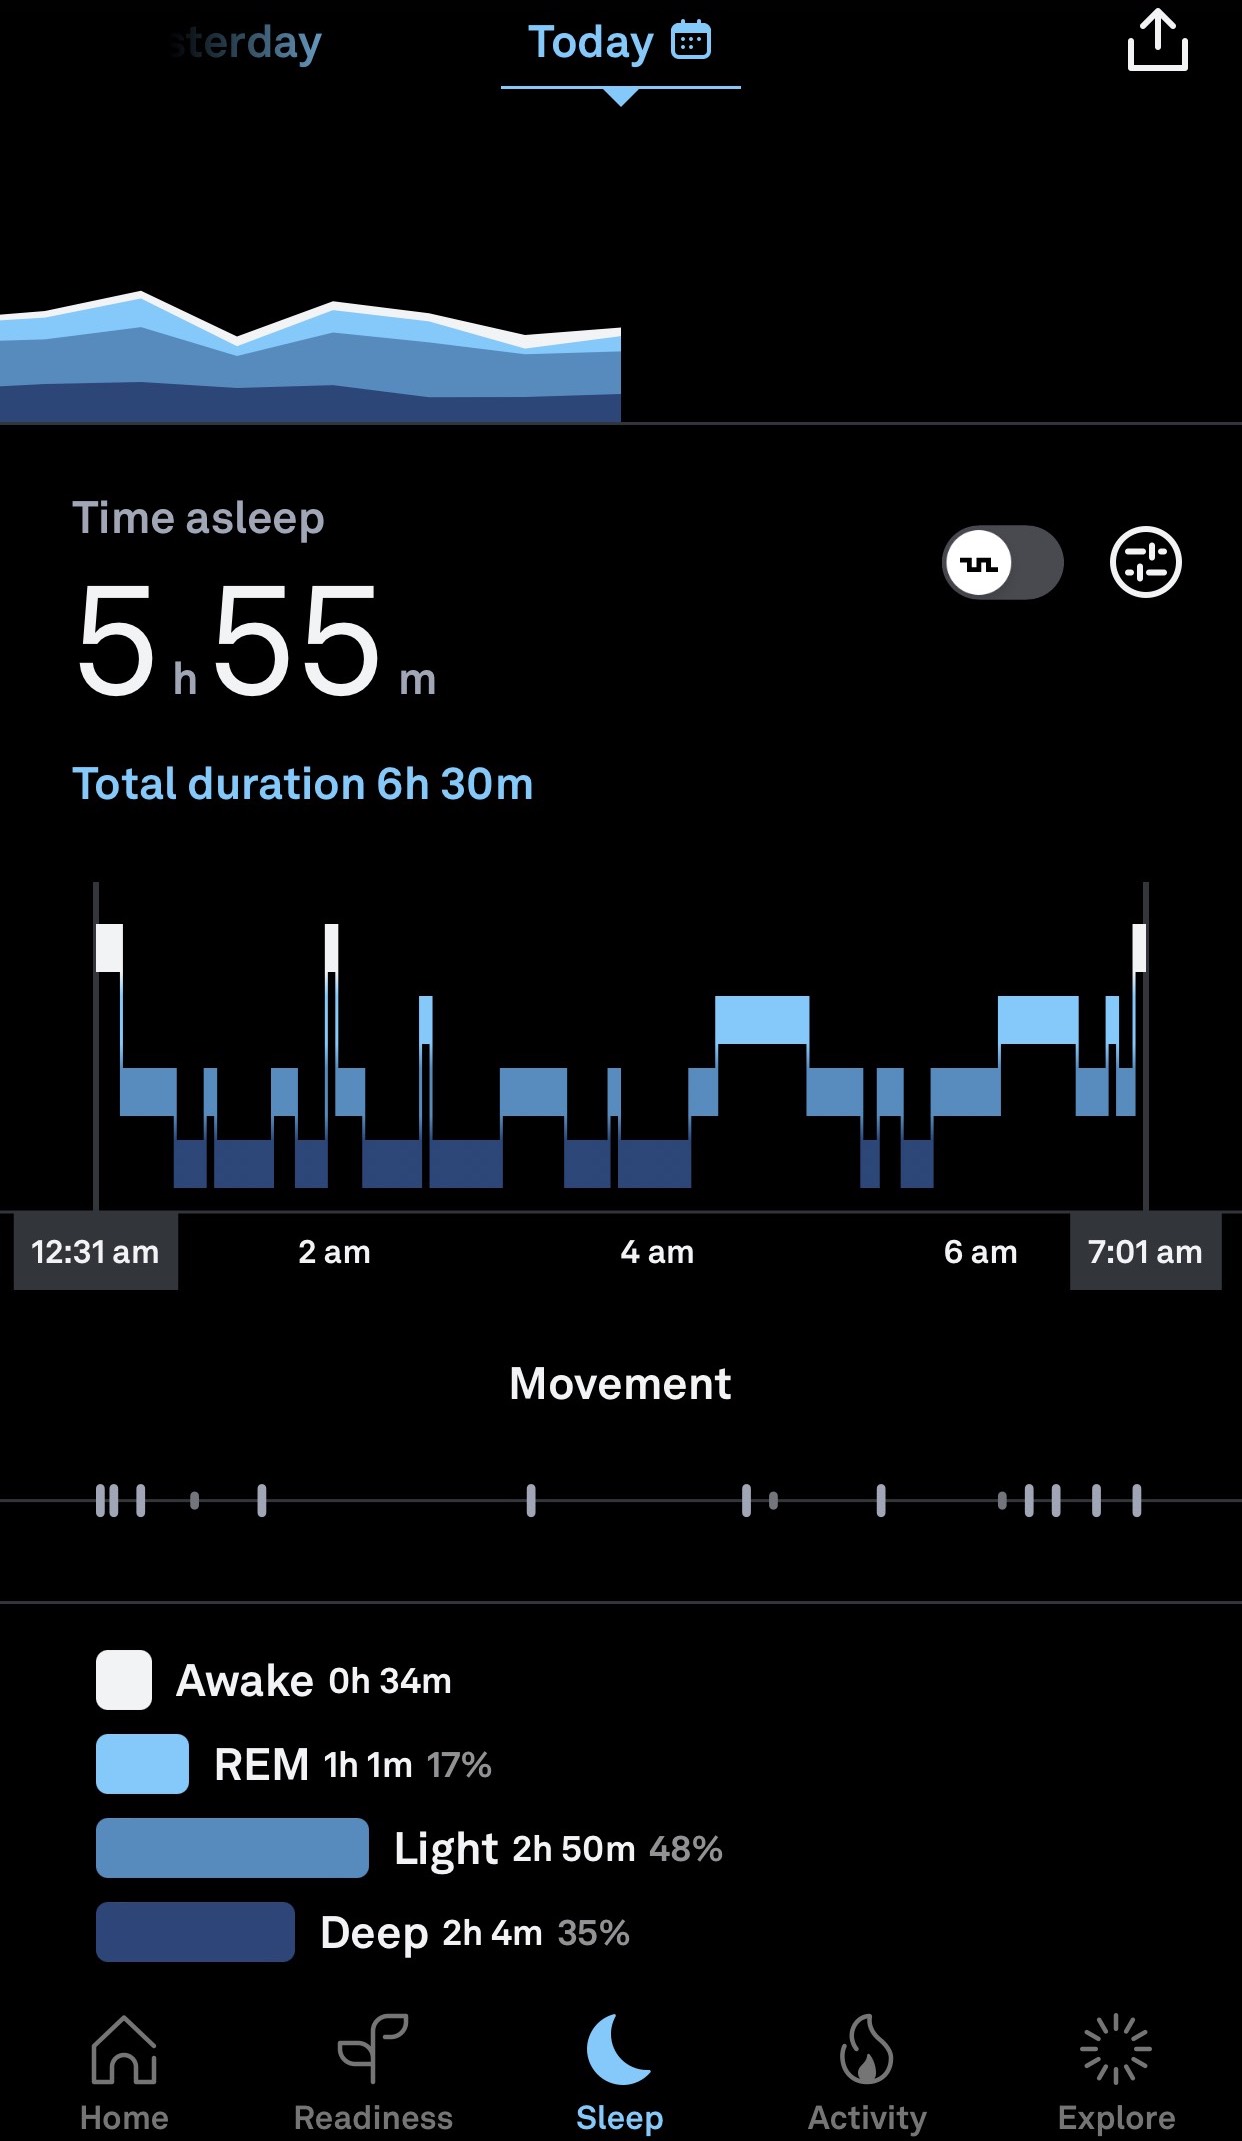 la scheda sonno di Oura App in cui viene visualizzato un ipnogramma (grafico delle fasi del sonno). La fase REM, il sonno leggero e il sonno profondo vengono rappresentati con diverse sfumature di blu. Il periodo di veglia viene visualizzato in bianco